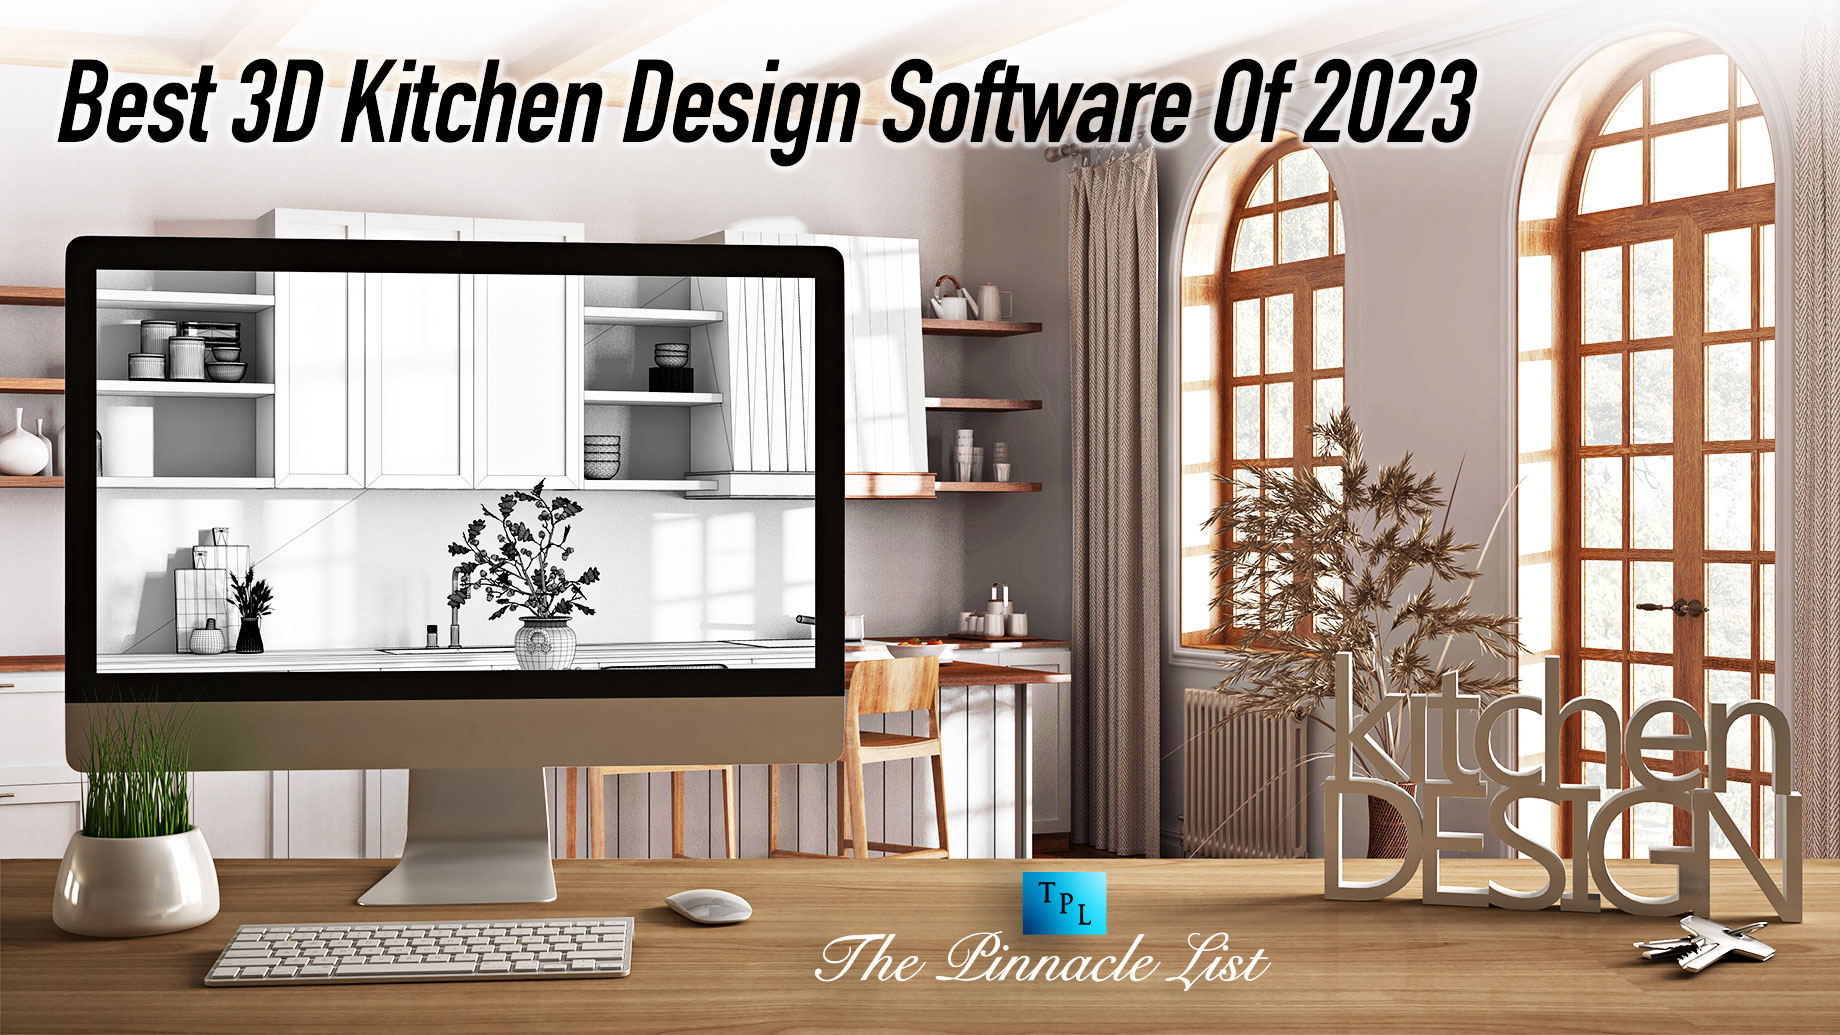 Best 3D Kitchen Design Software Of 2023